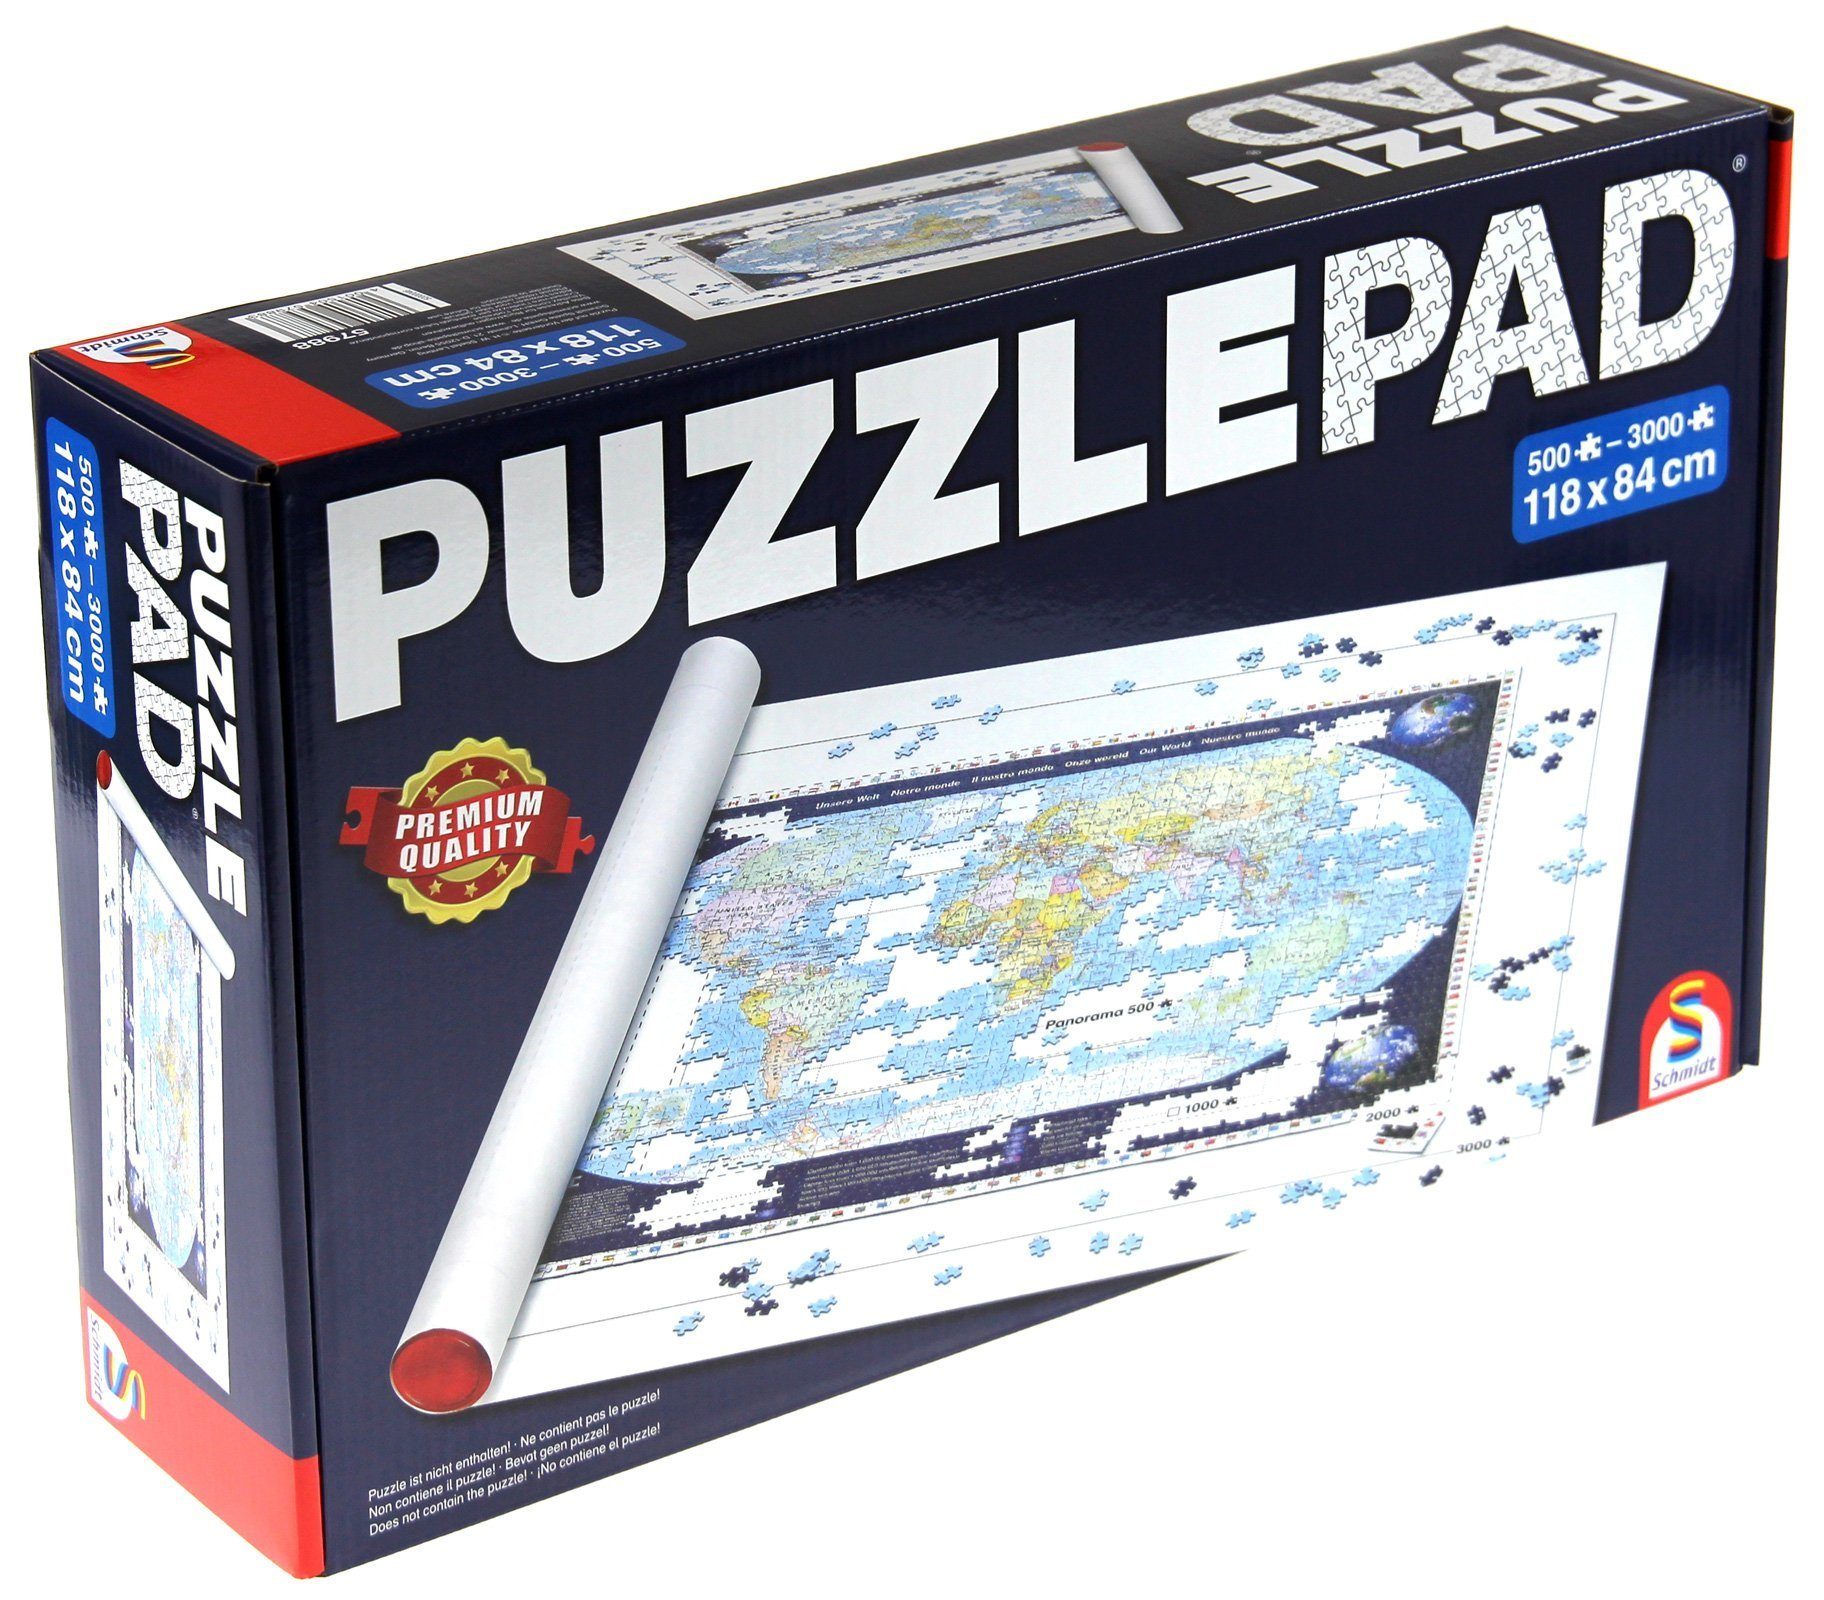 Puzzle Puzzle Roll Mat jusqu'à 3000 pièces